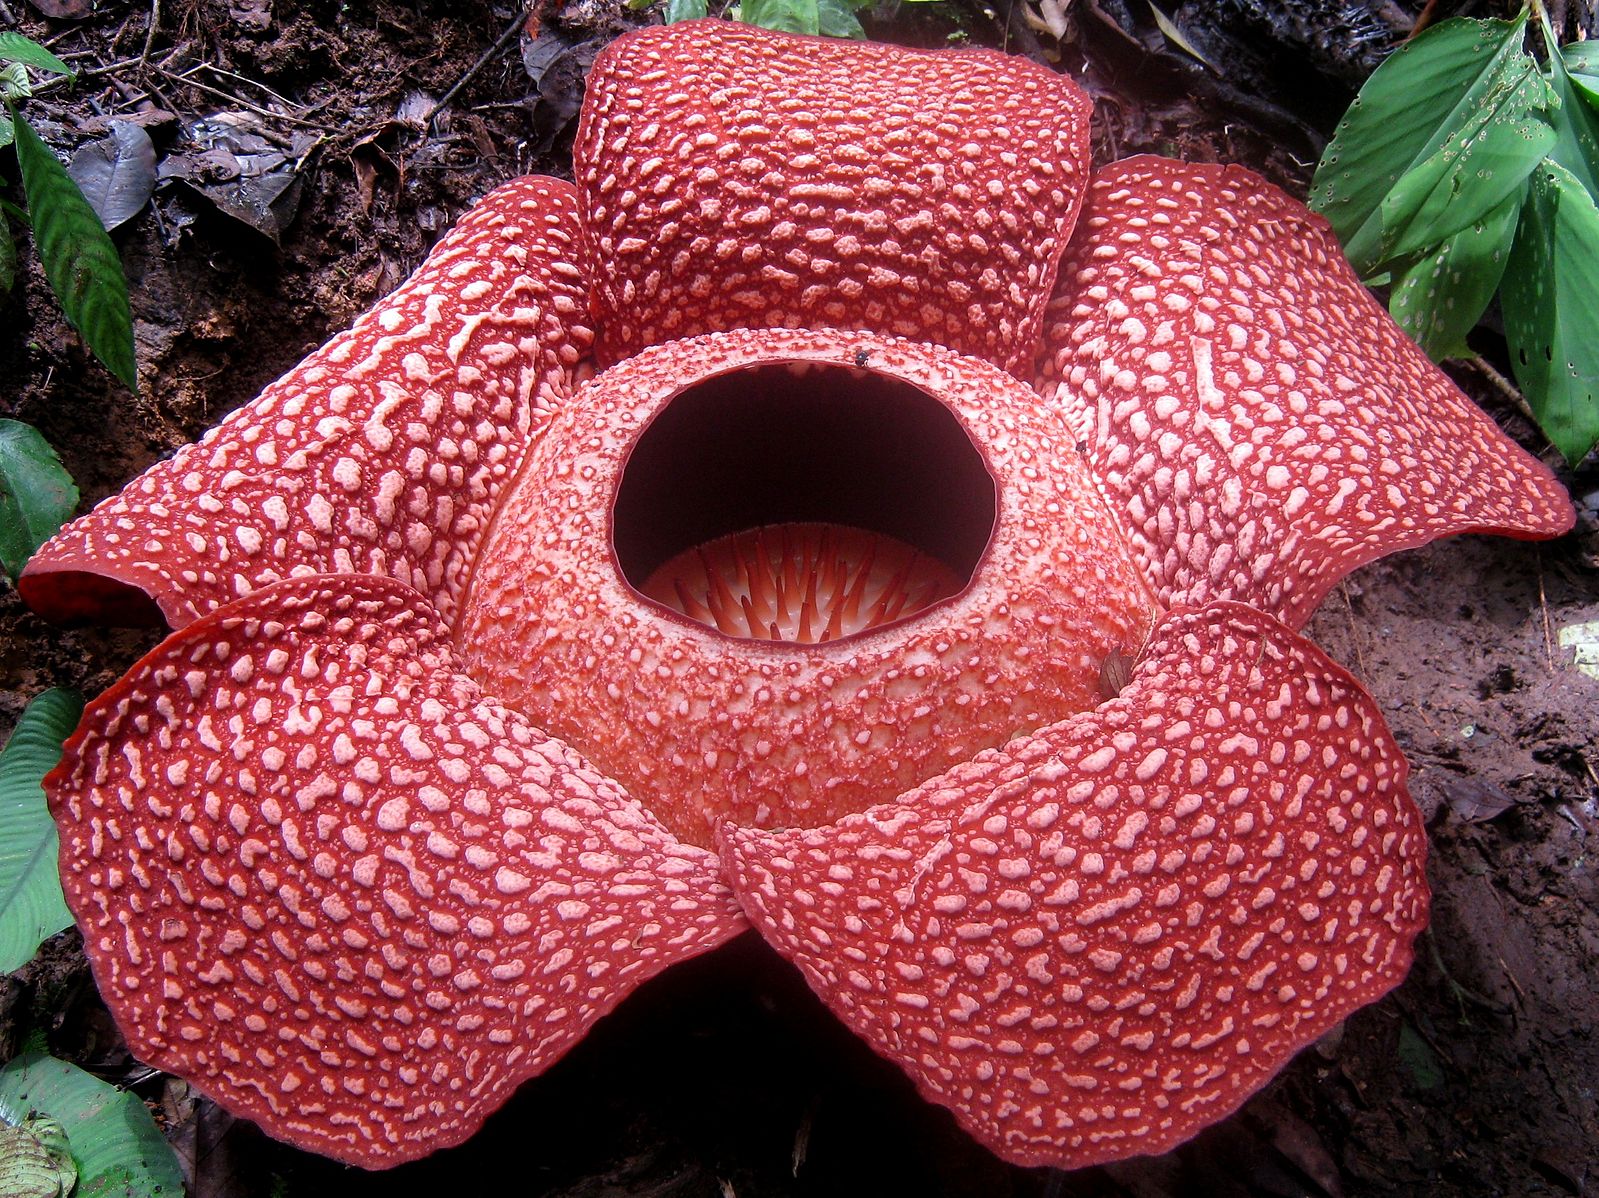 Species Of The Week Rafflesia One Earth